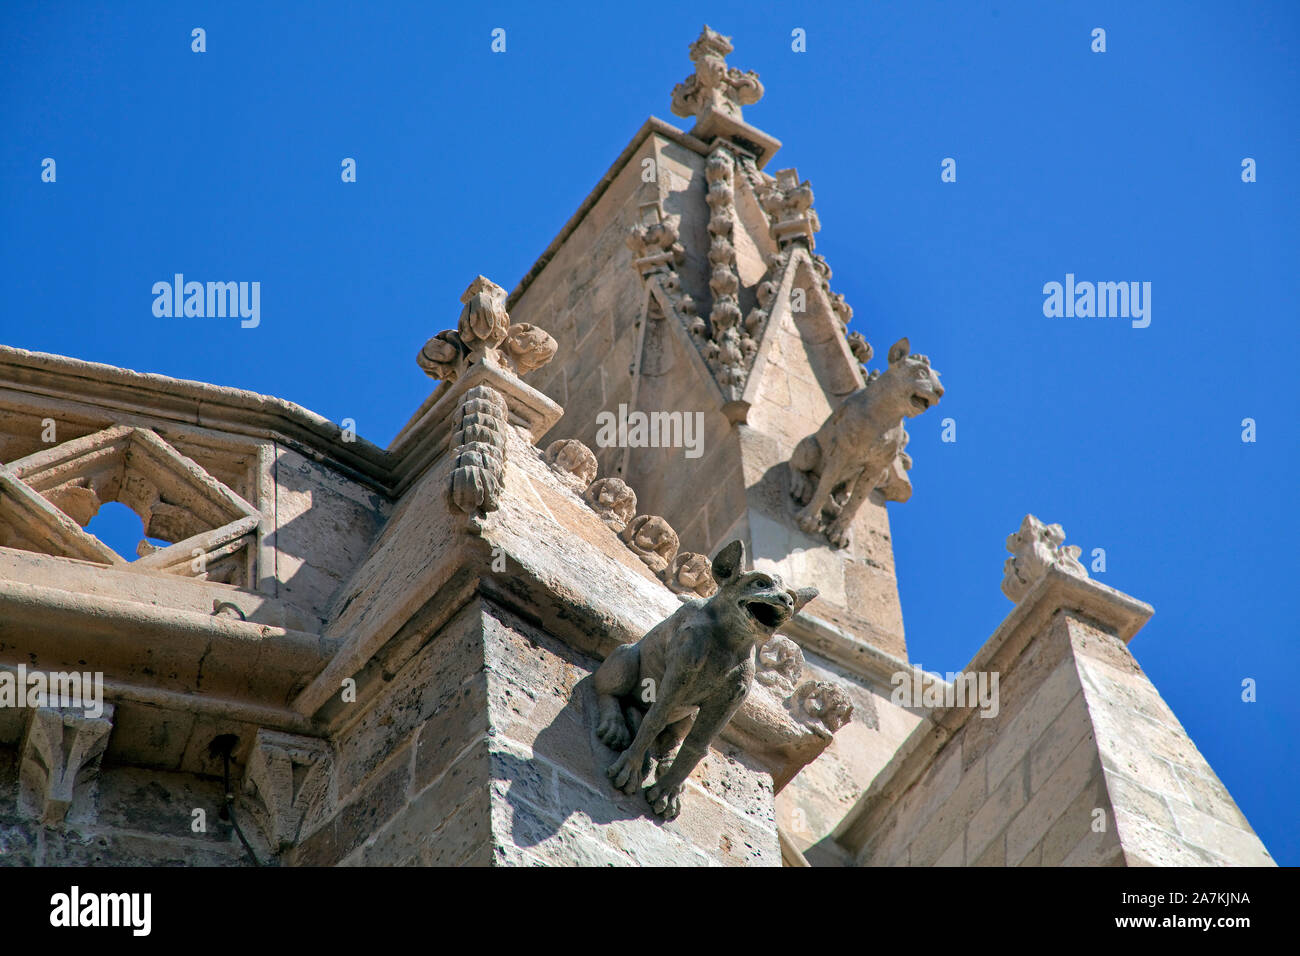 Mitiche creature di pietra sulla sommità della cattedrale La Seu, Palma, Palma de Mallorca, Maiorca, isole Baleari, Spagna Foto Stock